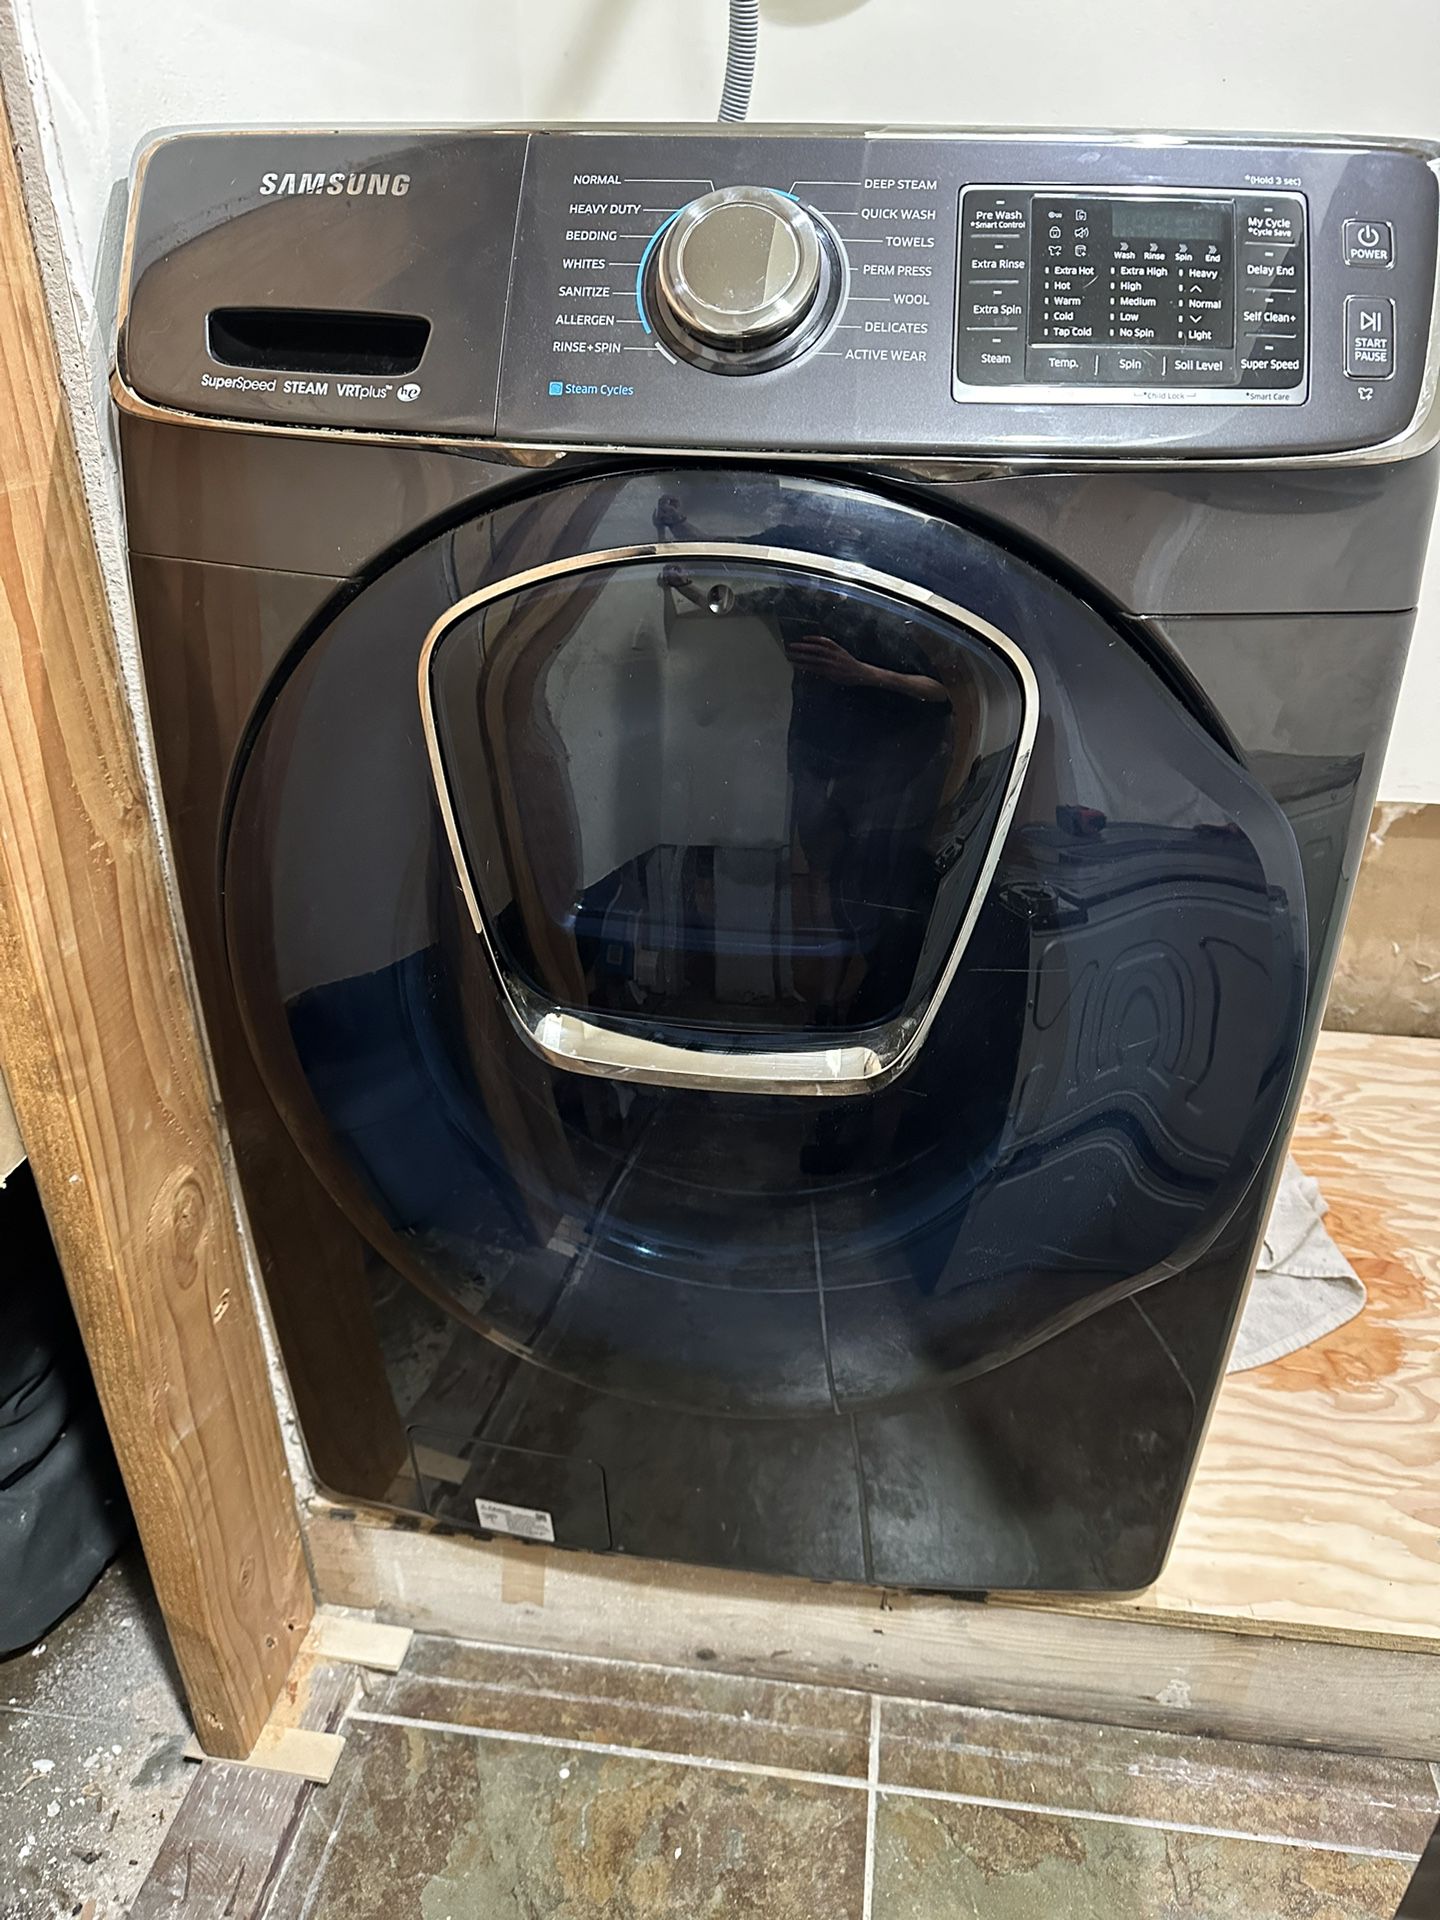 Samsung Washer/Dryer And pedestals